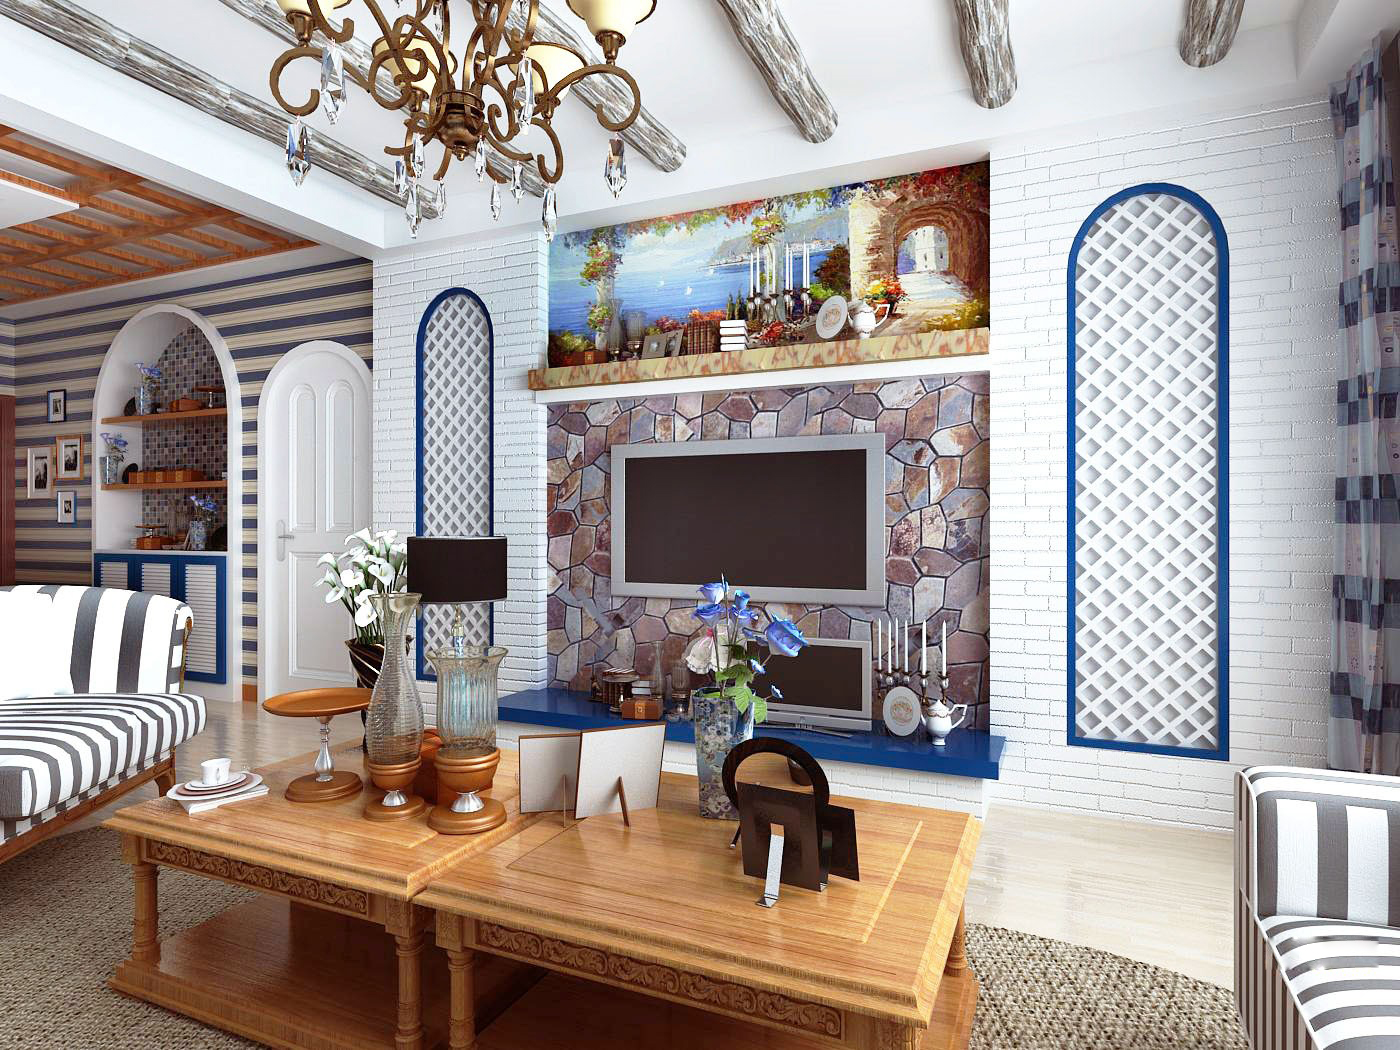 二居 客厅图片来自合建装饰-二手房装修在地中海风格的分享